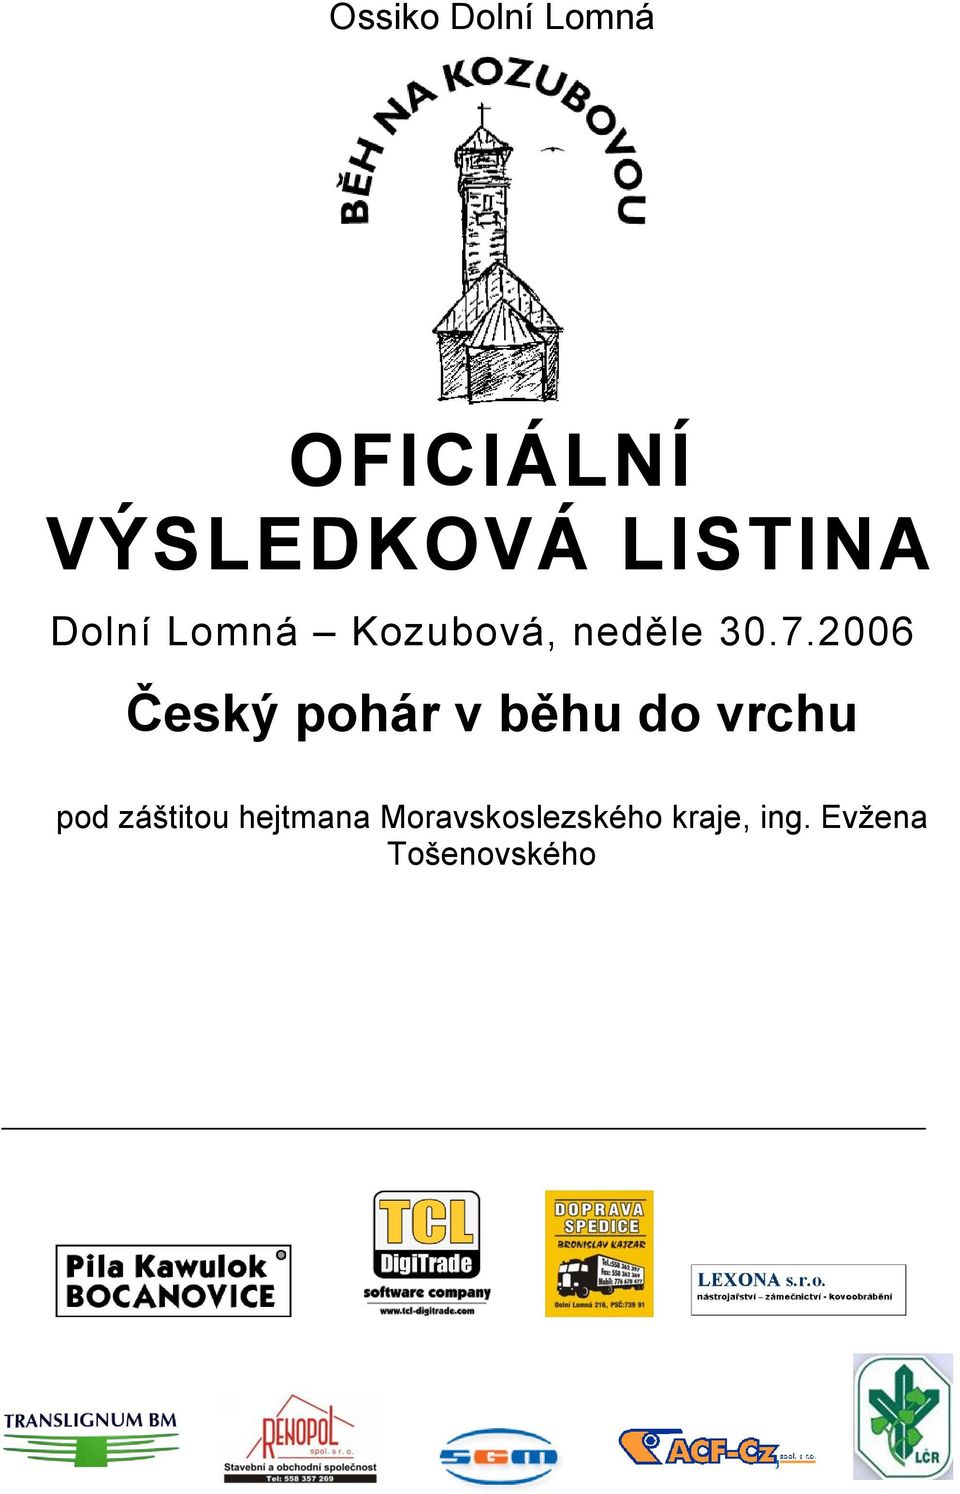 2006 Český pohár v běhu do vrchu pod záštitou